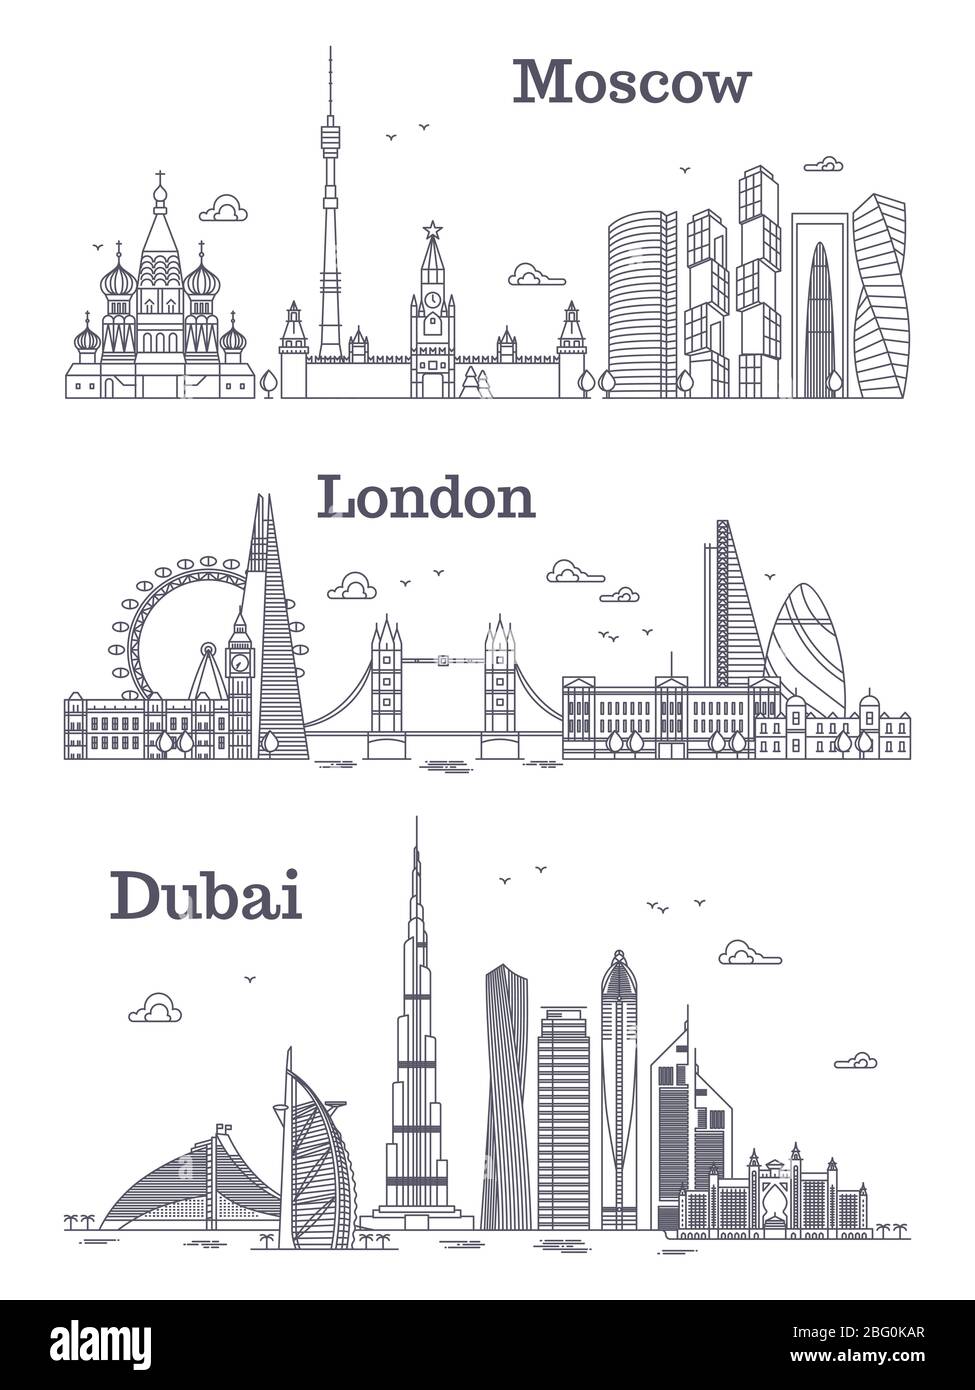 Moscow, London, Dubai linear landmark, modern city skyline, panorama with buildings. Vector illustration Stock Vector